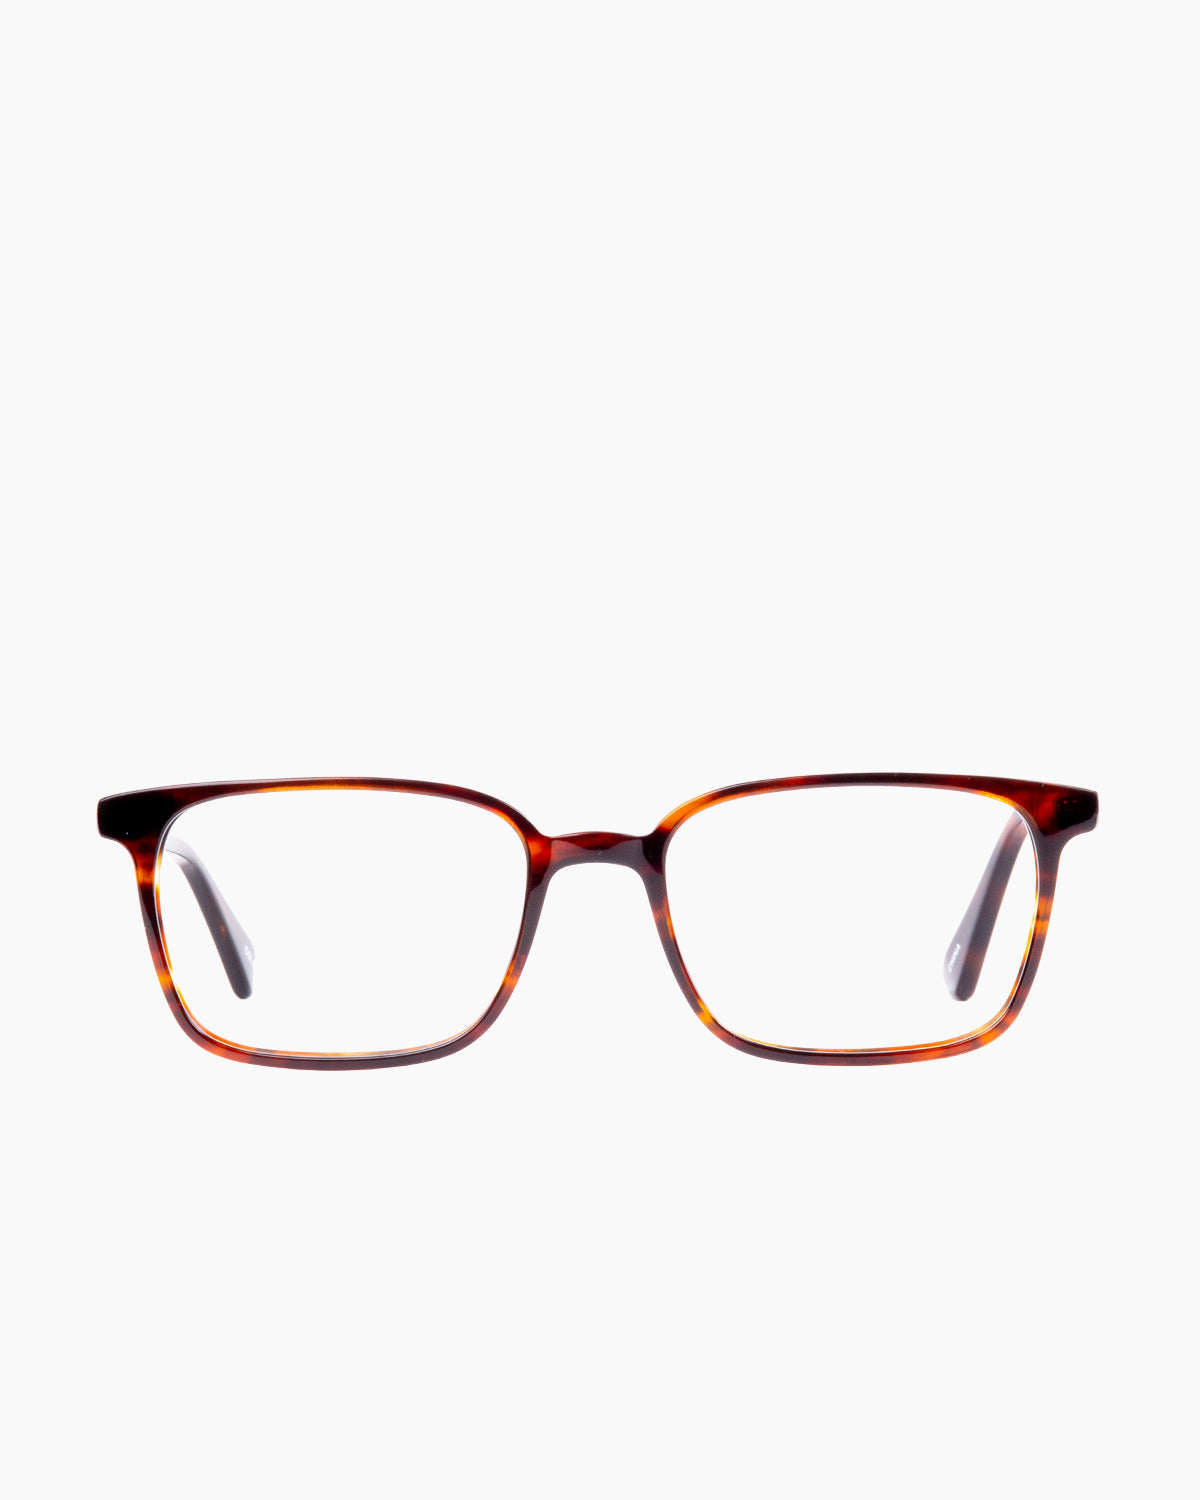 Evolve - Benton - 172 | glasses bar:  Marie-Sophie Dion